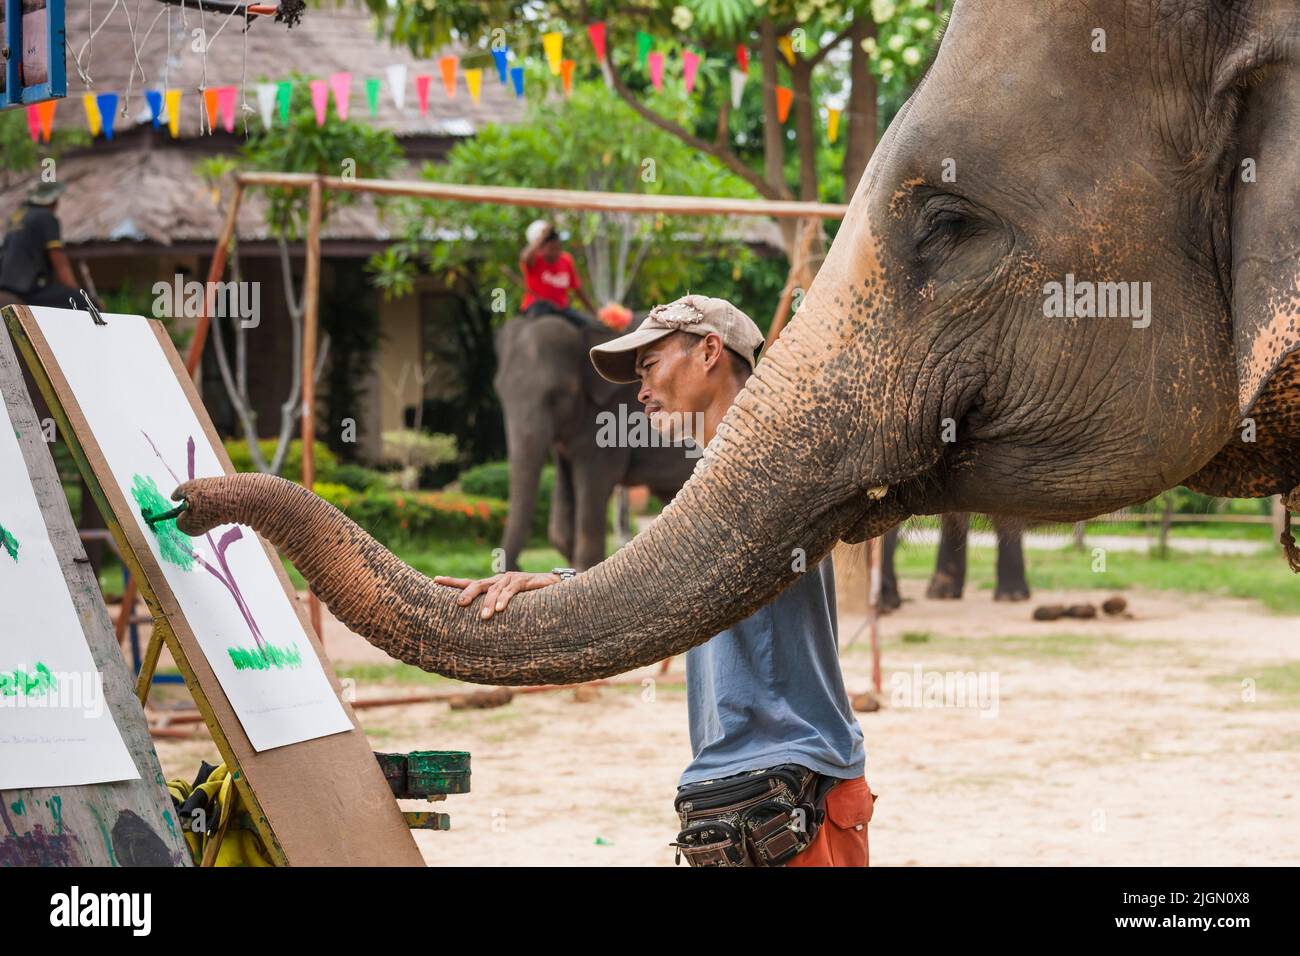 Elephant Village, espectáculo de elefantes, pintura, actuación, Surin, ISAN (Isaan), Tailandia, Sudeste Asiático, Asia Foto de stock